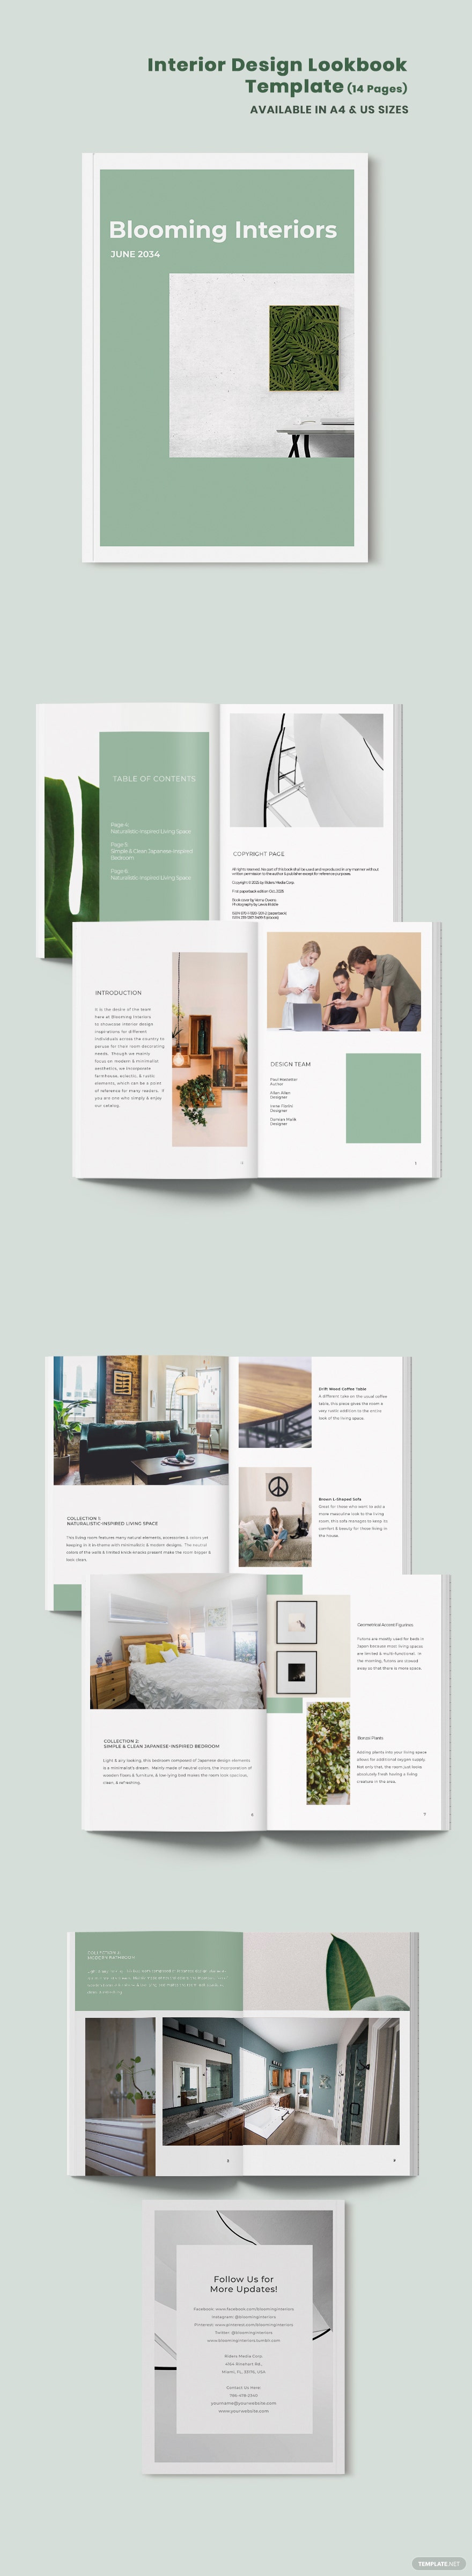 interior design lookbook